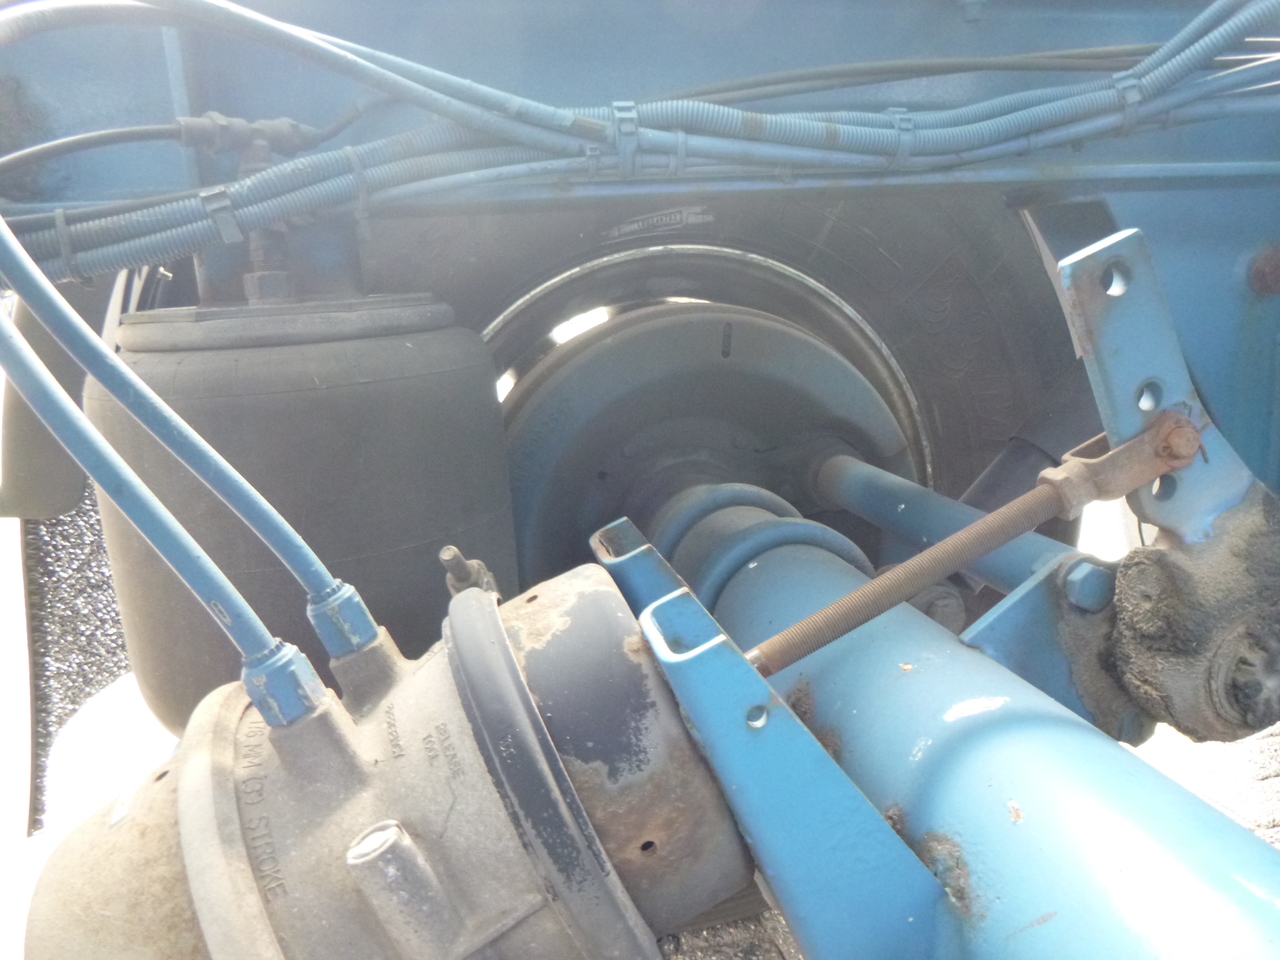 Cisterna semirremolque para transporte de gas Guhur Low-pressure gas tank steel 31.5 m3 / 10 bar (methyl chloride): foto 19